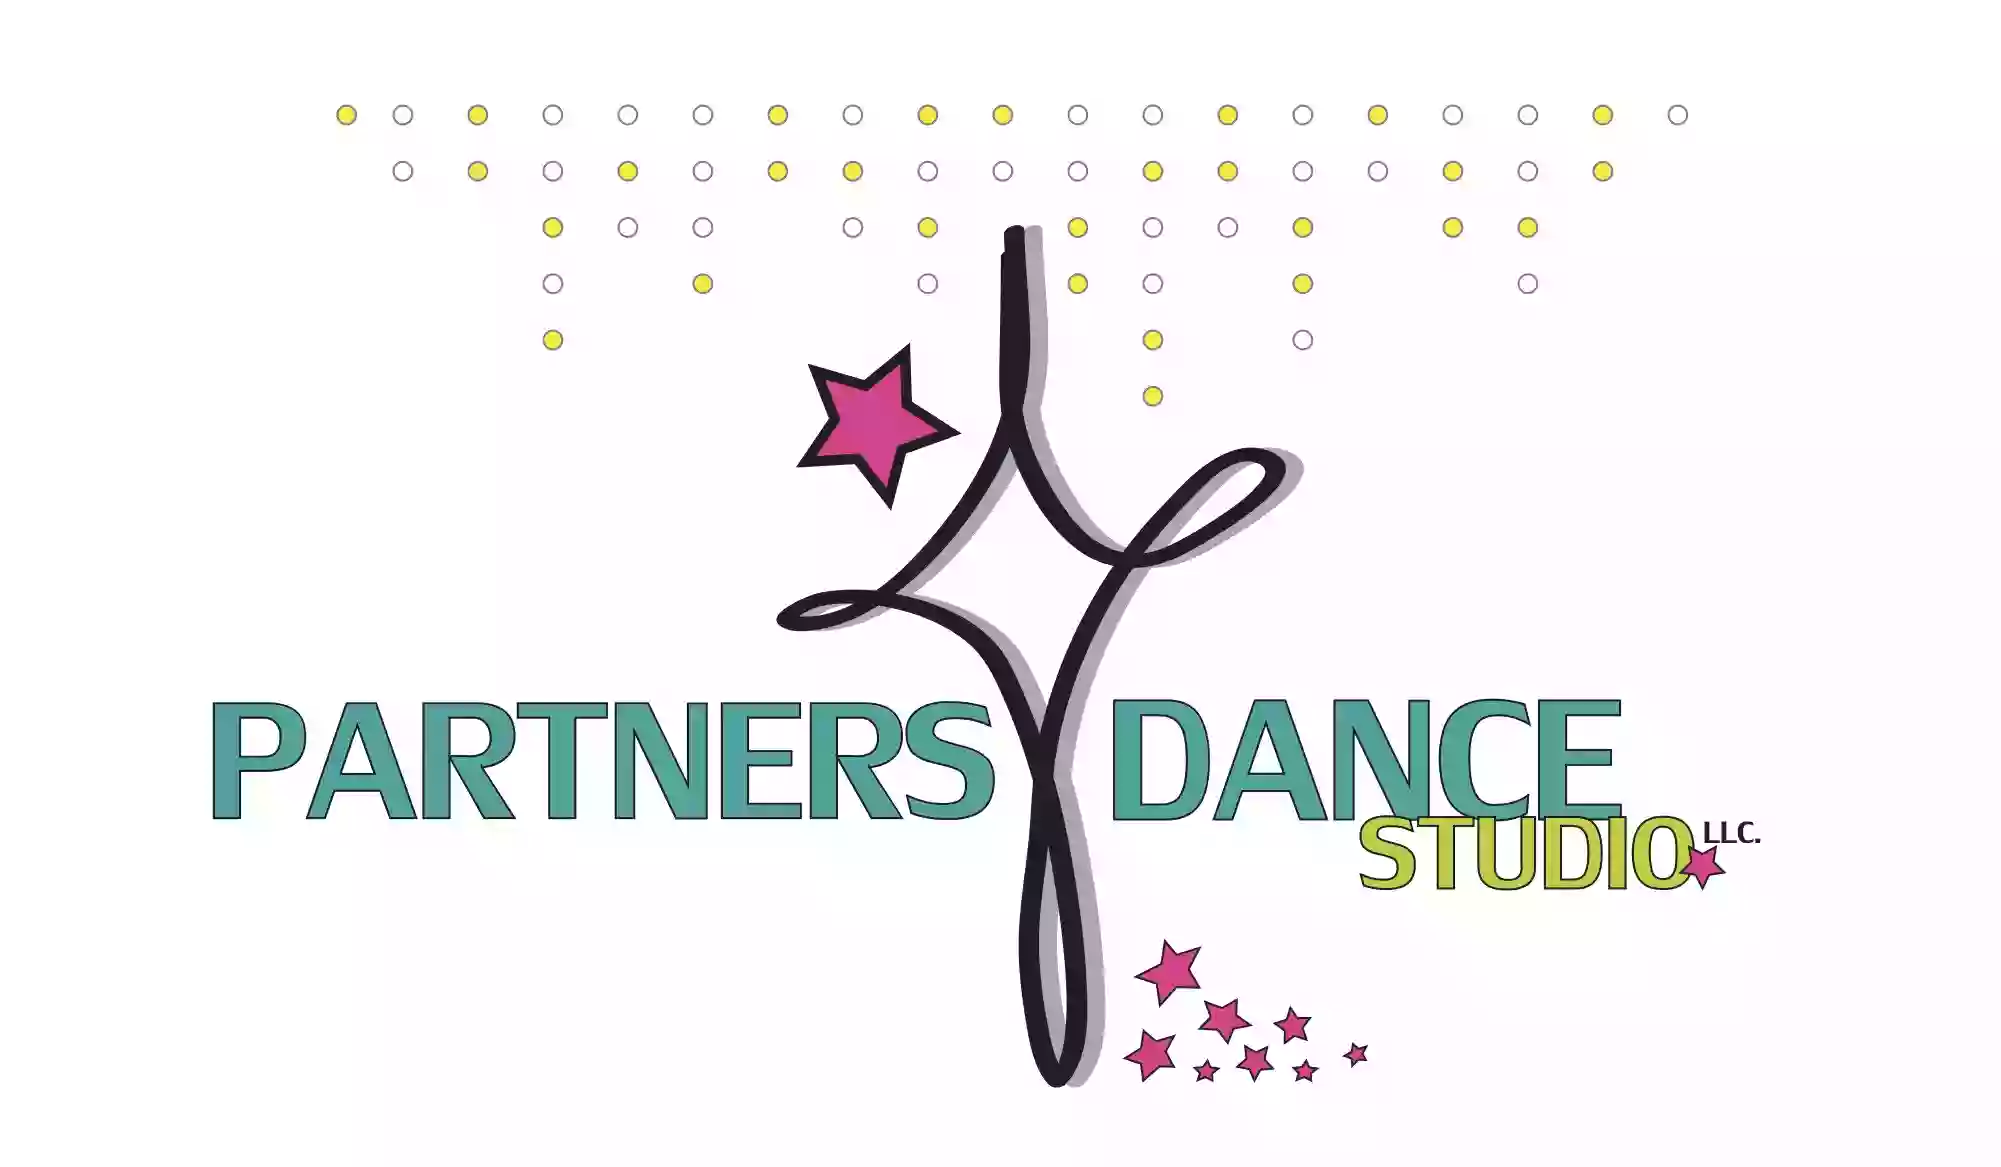 Partners Dance Studio